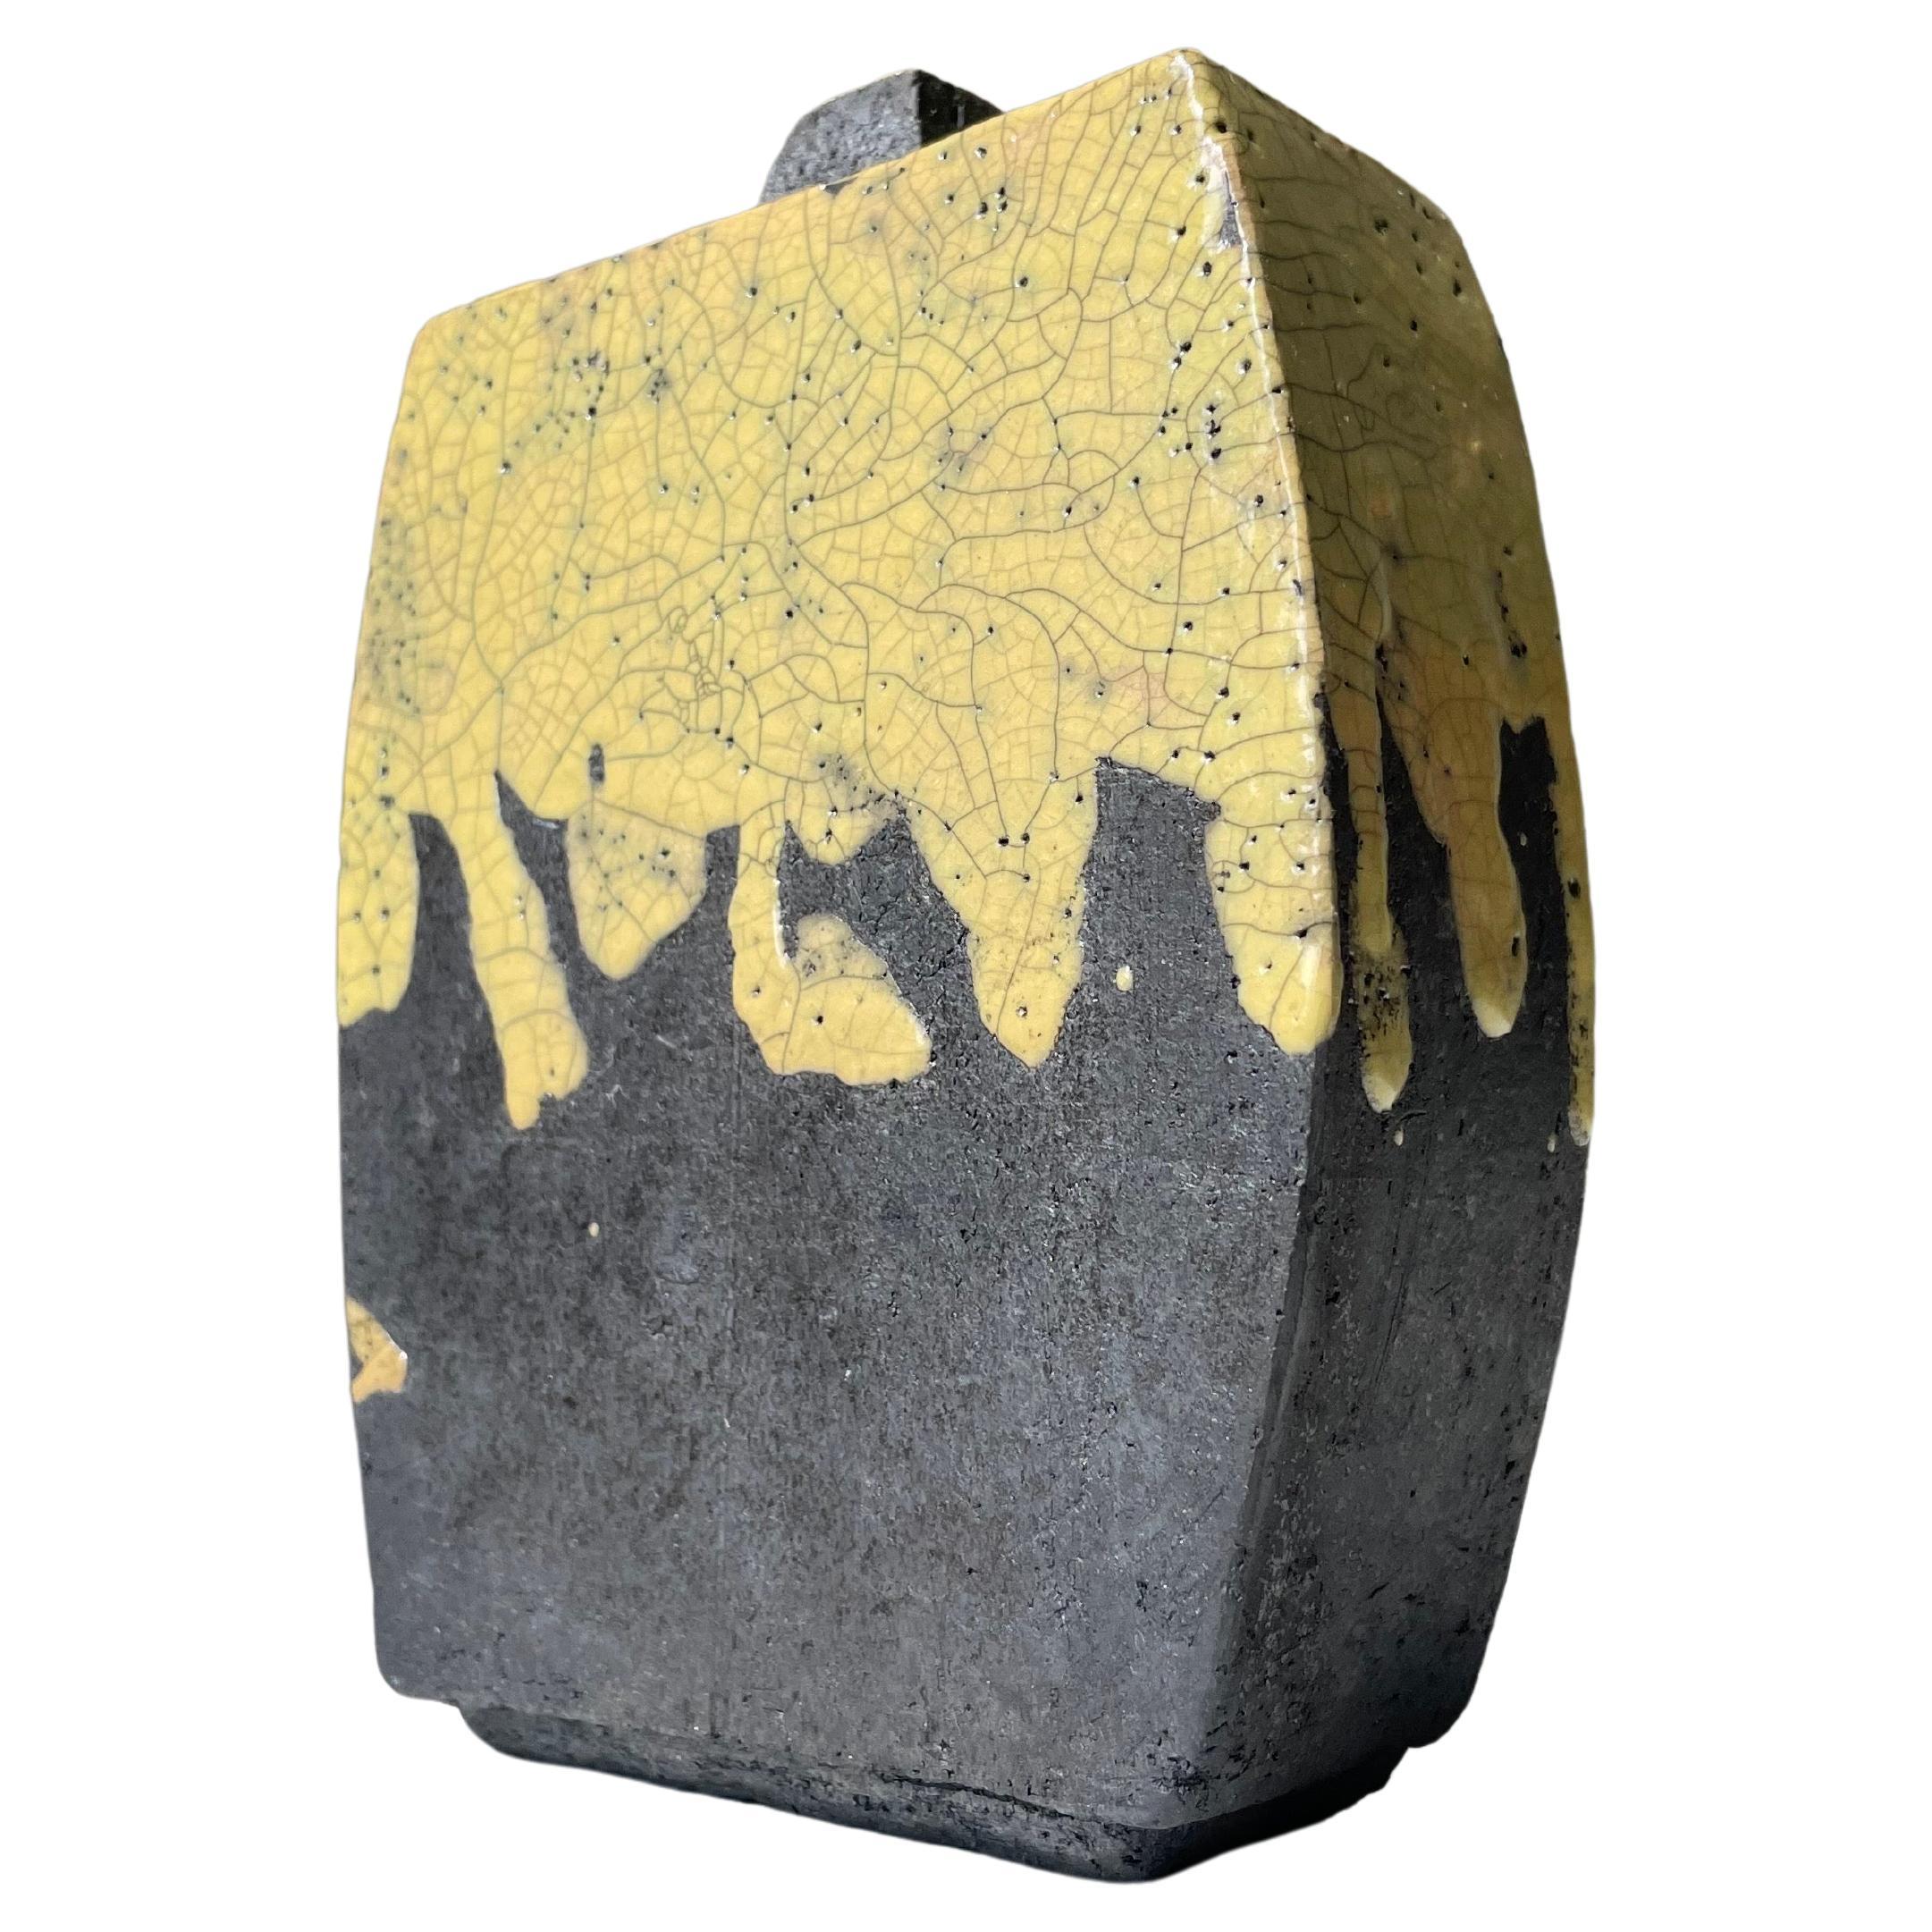 The Modern Scandinavian modern Japanese inspired rustic raku ceramic decorative vase. Glaçure jaune craquelée sur argile brute anthracite. Combinaison de formes arrondies et de lignes droites avec un court plateau carré partiellement vitré. Signé